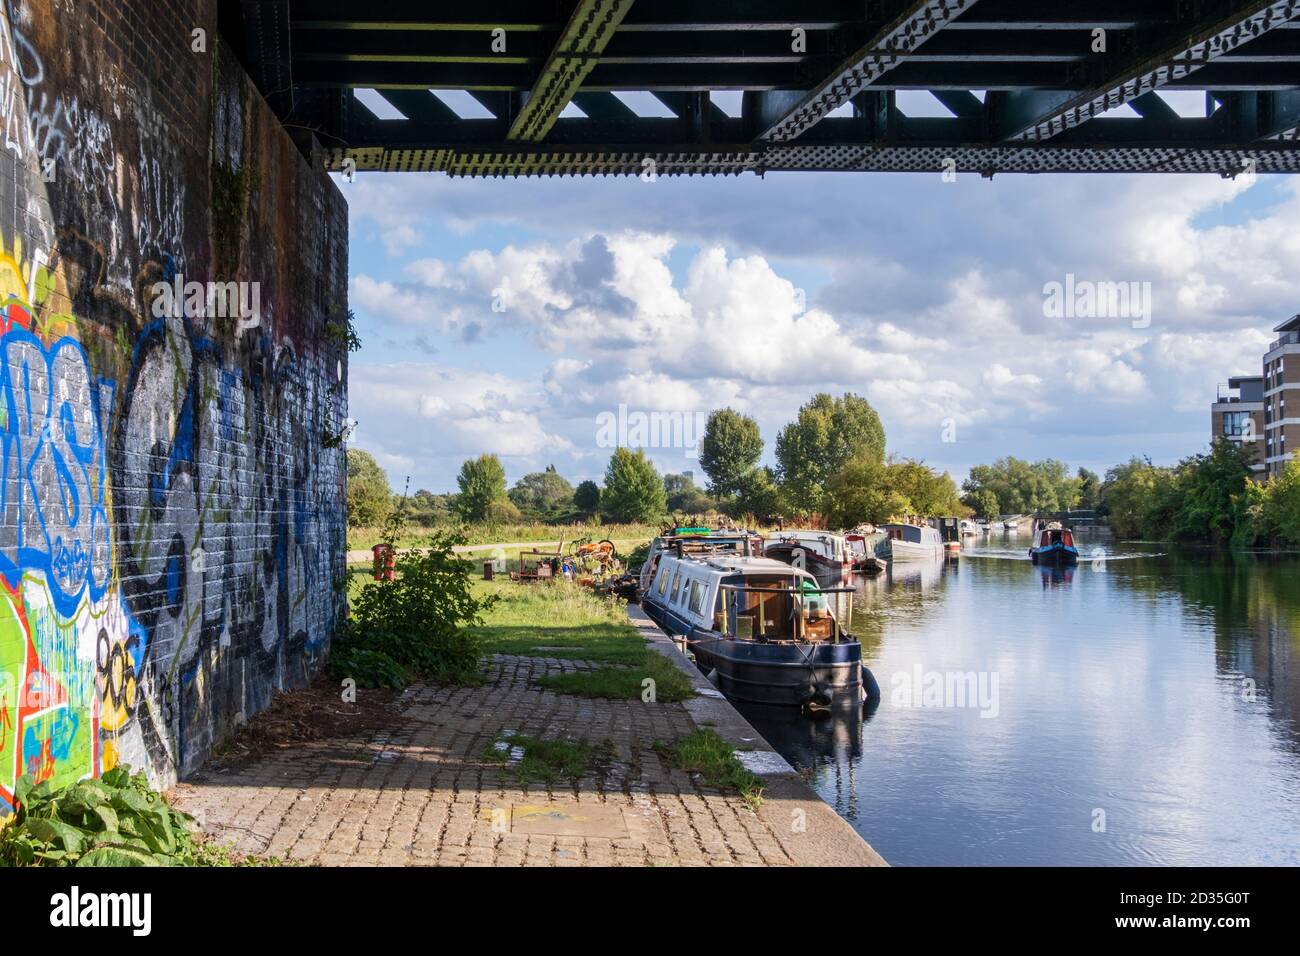 Regno Unito, Londra. Paesaggio urbano - case galleggianti sul fiume Lea navigabile sezione canale con graffiti sotto un ponte ferroviario e un cielo estivo limpido Foto Stock